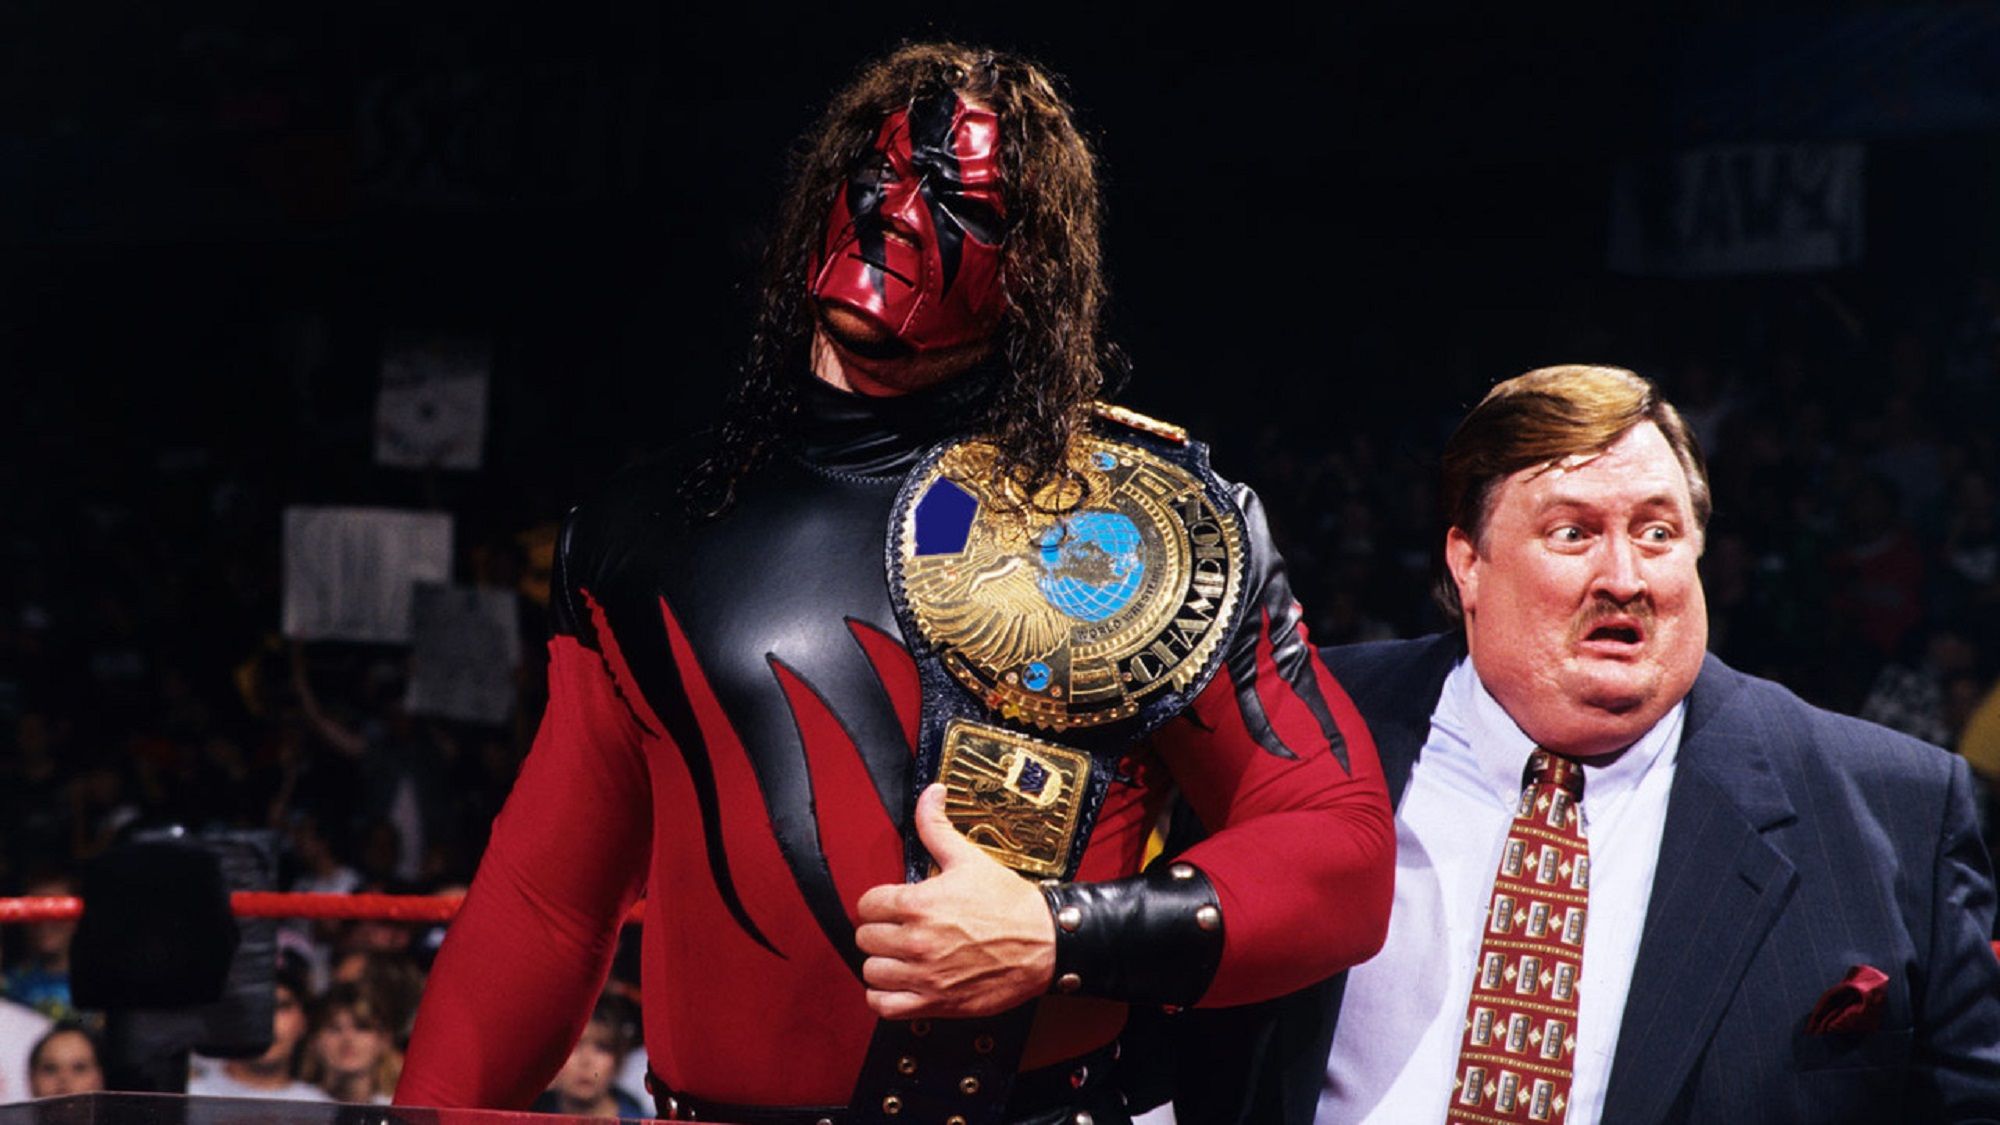 Kane as WWE champion in 1998